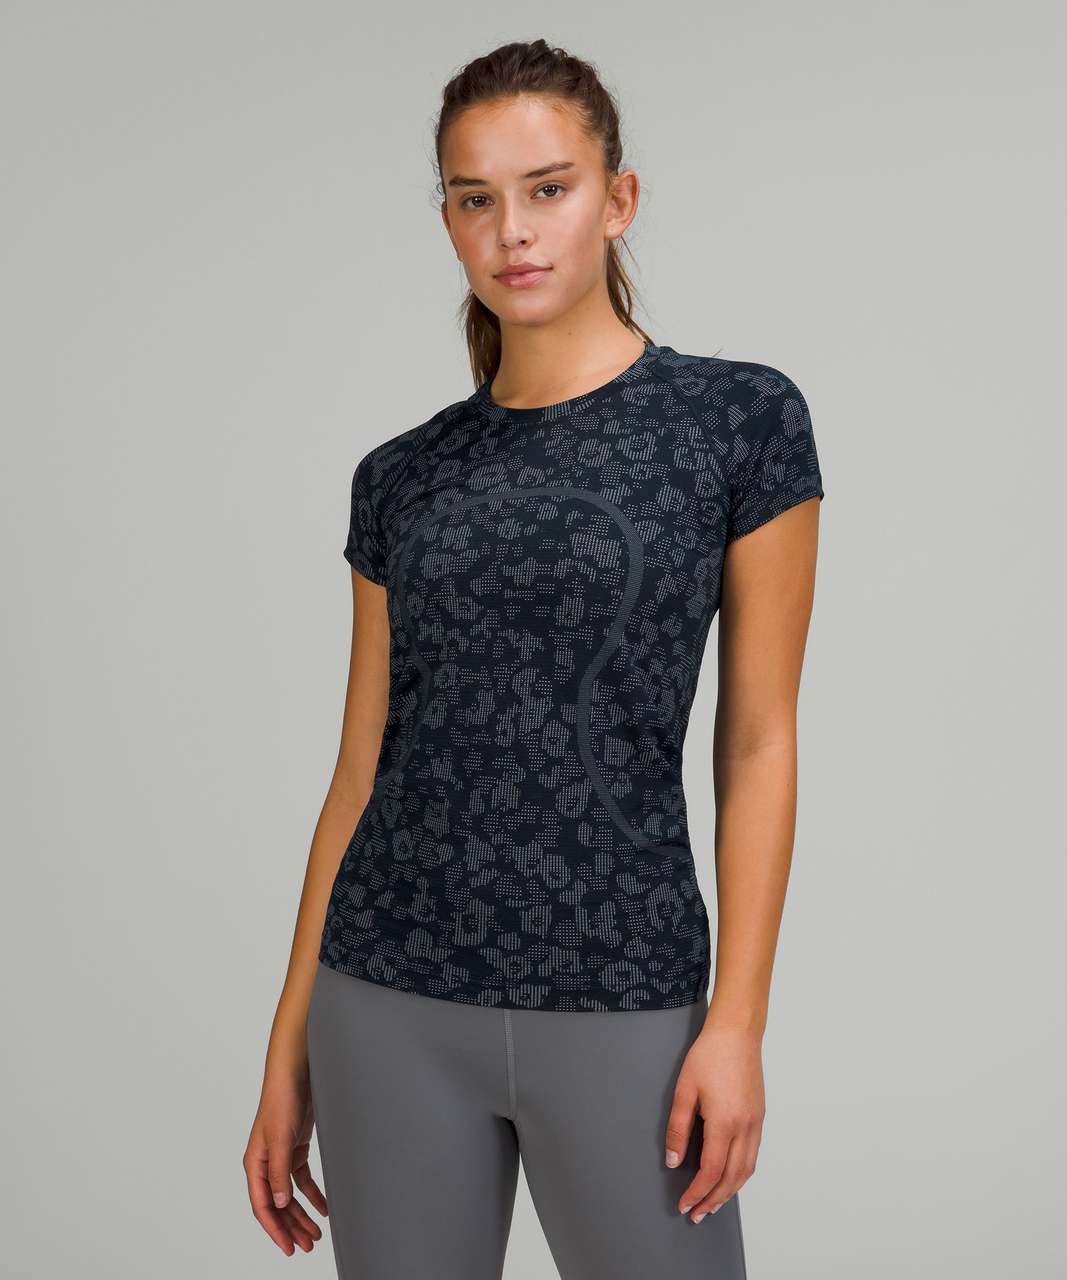 Lululemon Swiftly Tech Short Sleeve Shirt 2.0 - Dappled Floral True Navy / Ocean Air